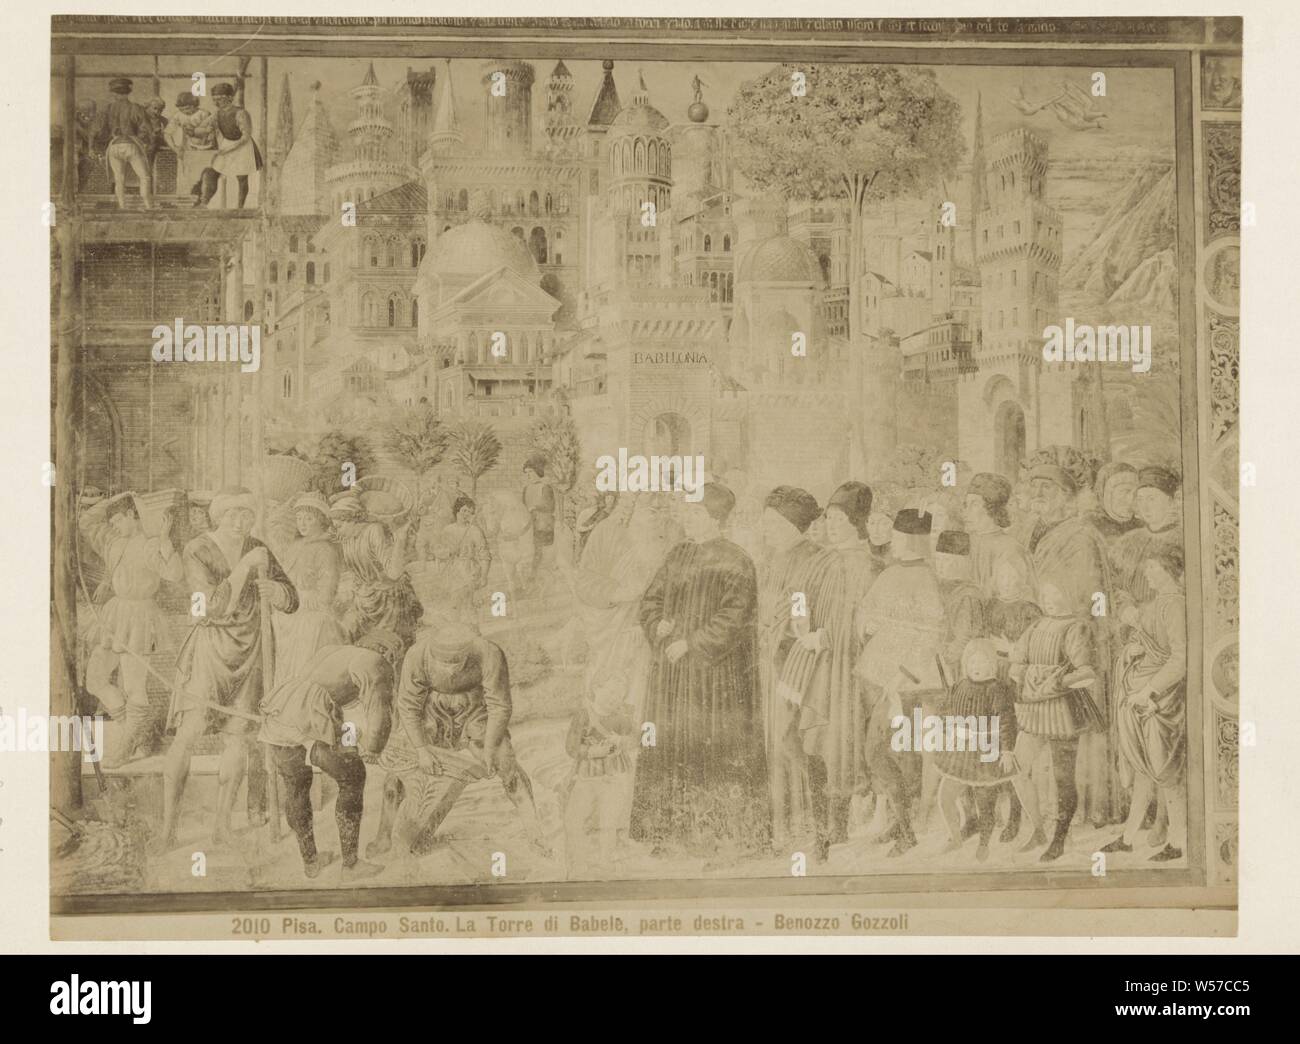 Fresko der Turm von Babel (rechter Teil) von Benozzo Gozzoli, Camposanto in Pisa 2010 Pisa (Titel der Serie), Giacomo Brogi (zugeschrieben), 1860-1881, Papier, Fotopapier, Karton, Eiklar drucken Stockfoto